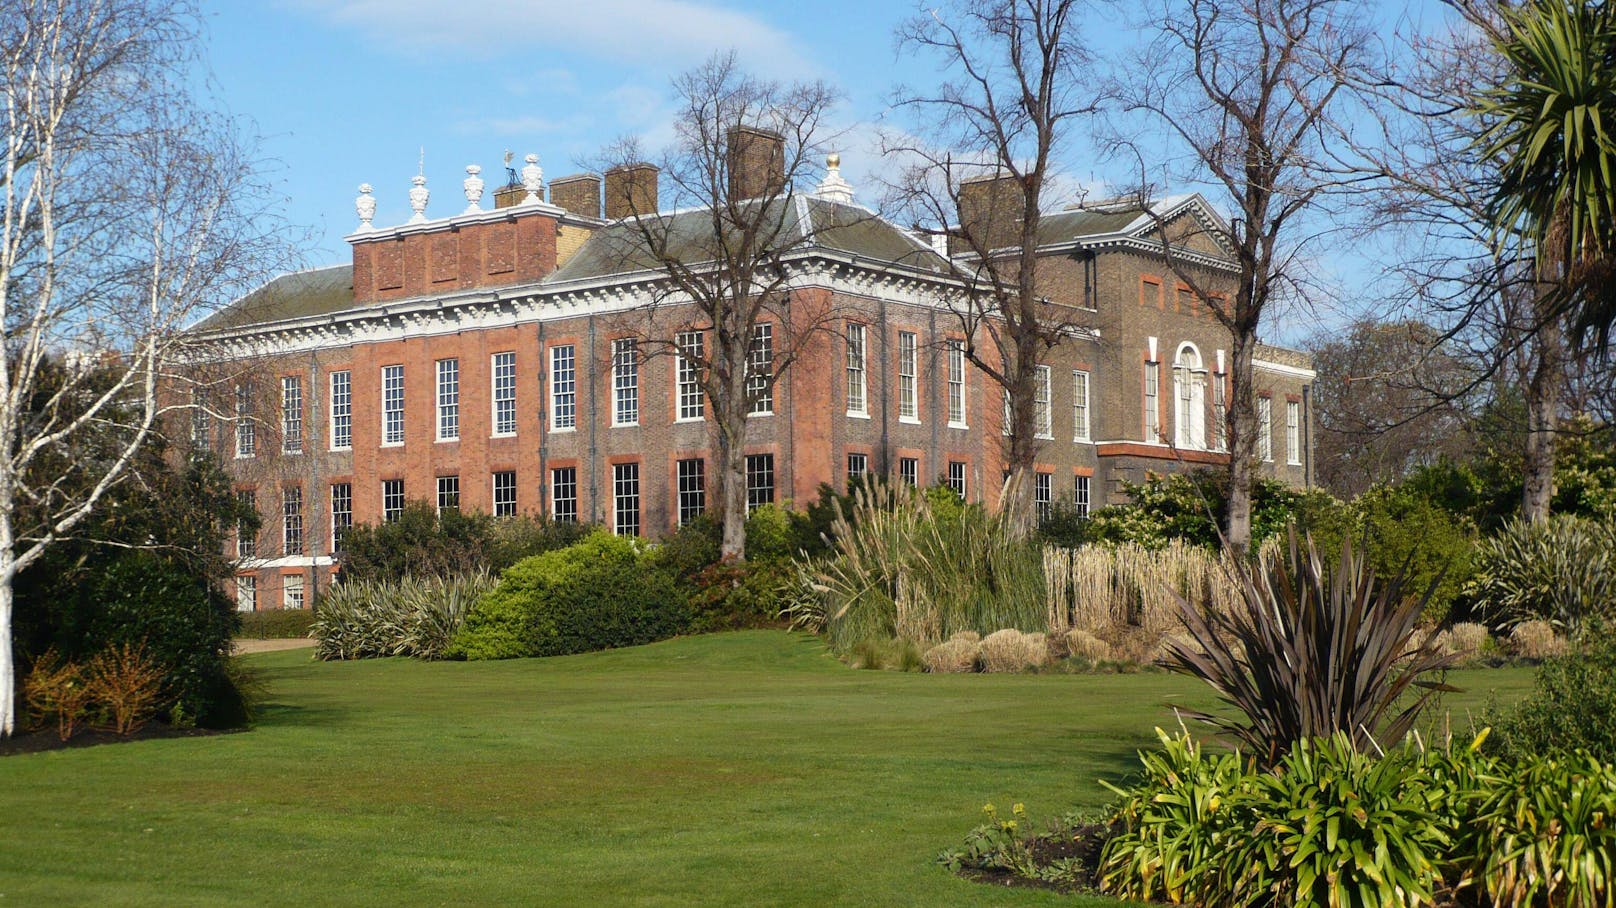 Der <strong>Kensington Palast</strong> ist ein Wohnsitz des Thronfolger-Paars Prinz William und Herzogin Kate. In den Parkanlagen wurde eine Frauenleiche entdeckt.